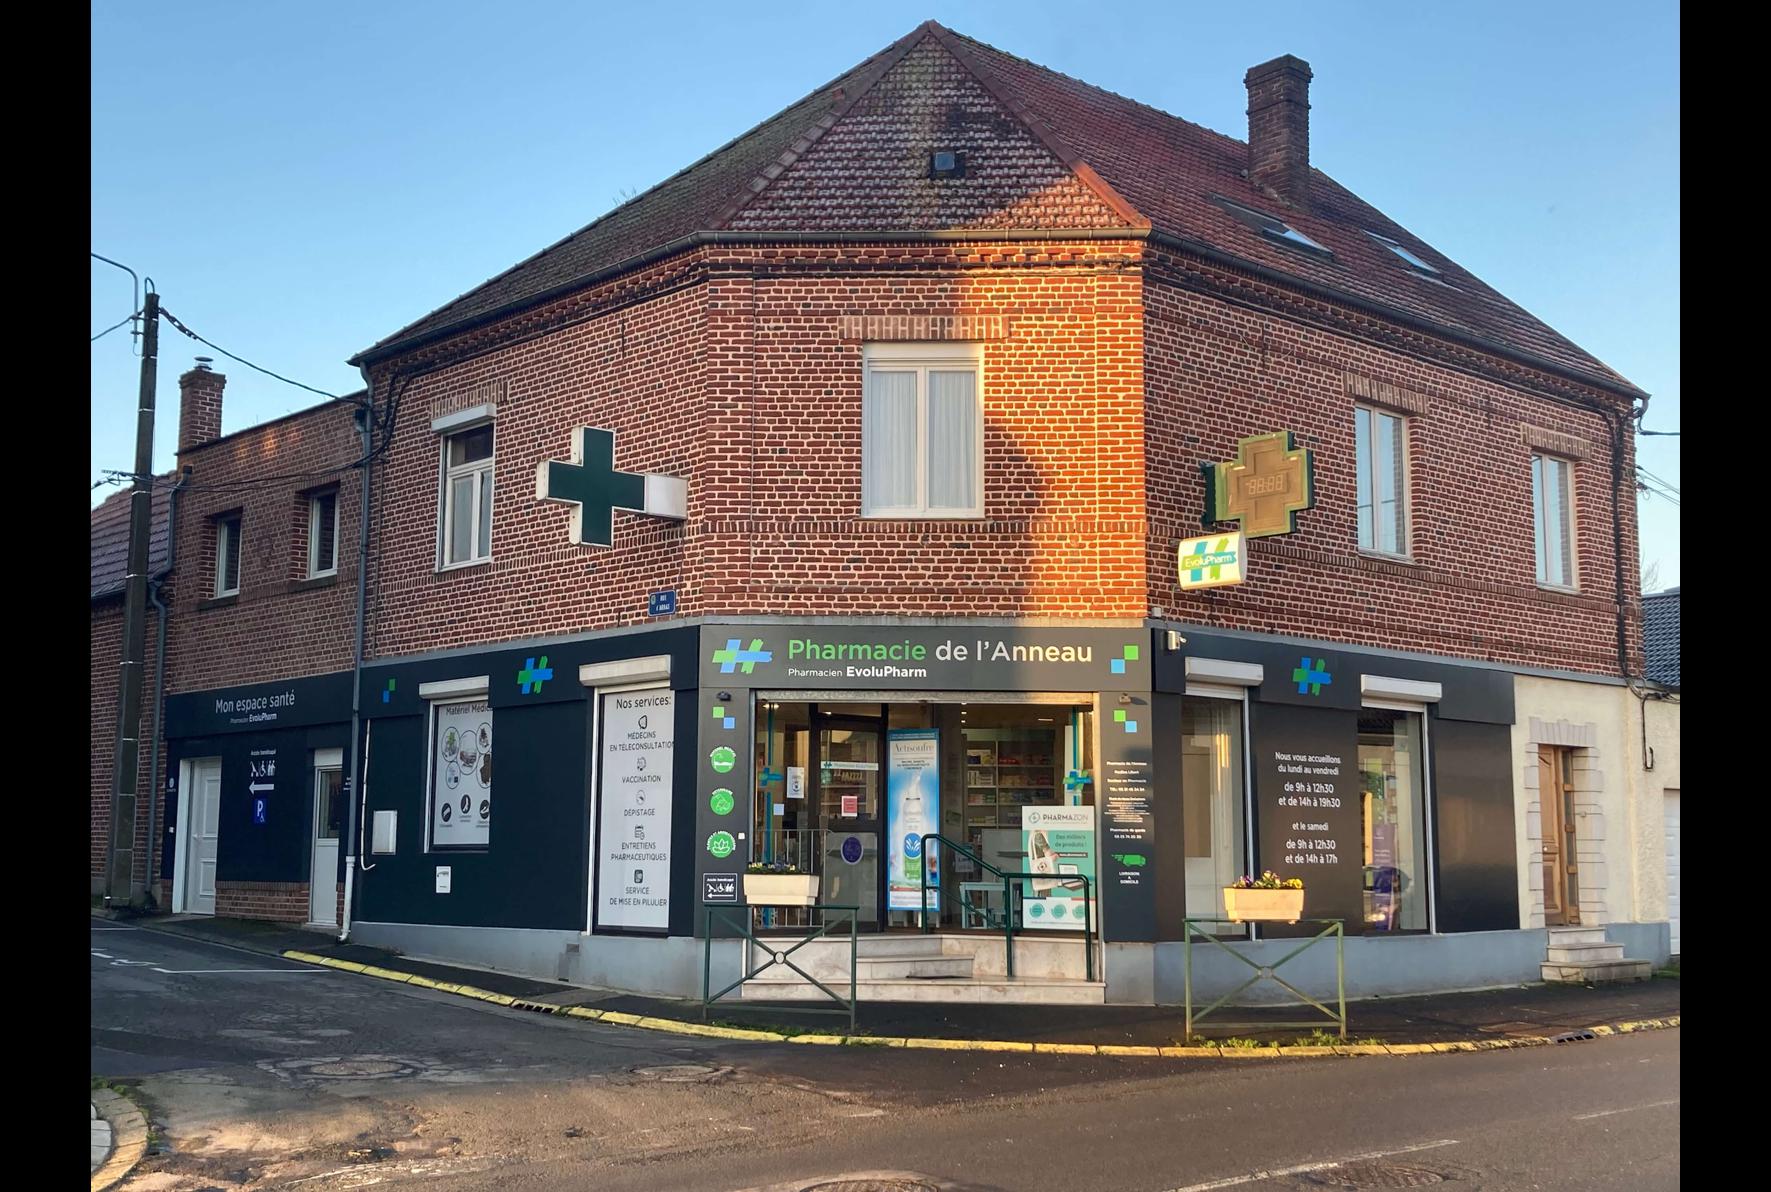 Magasin Pharmacie de l'Anneau - Ablain-Saint-Nazaire (62153) Visuel 1